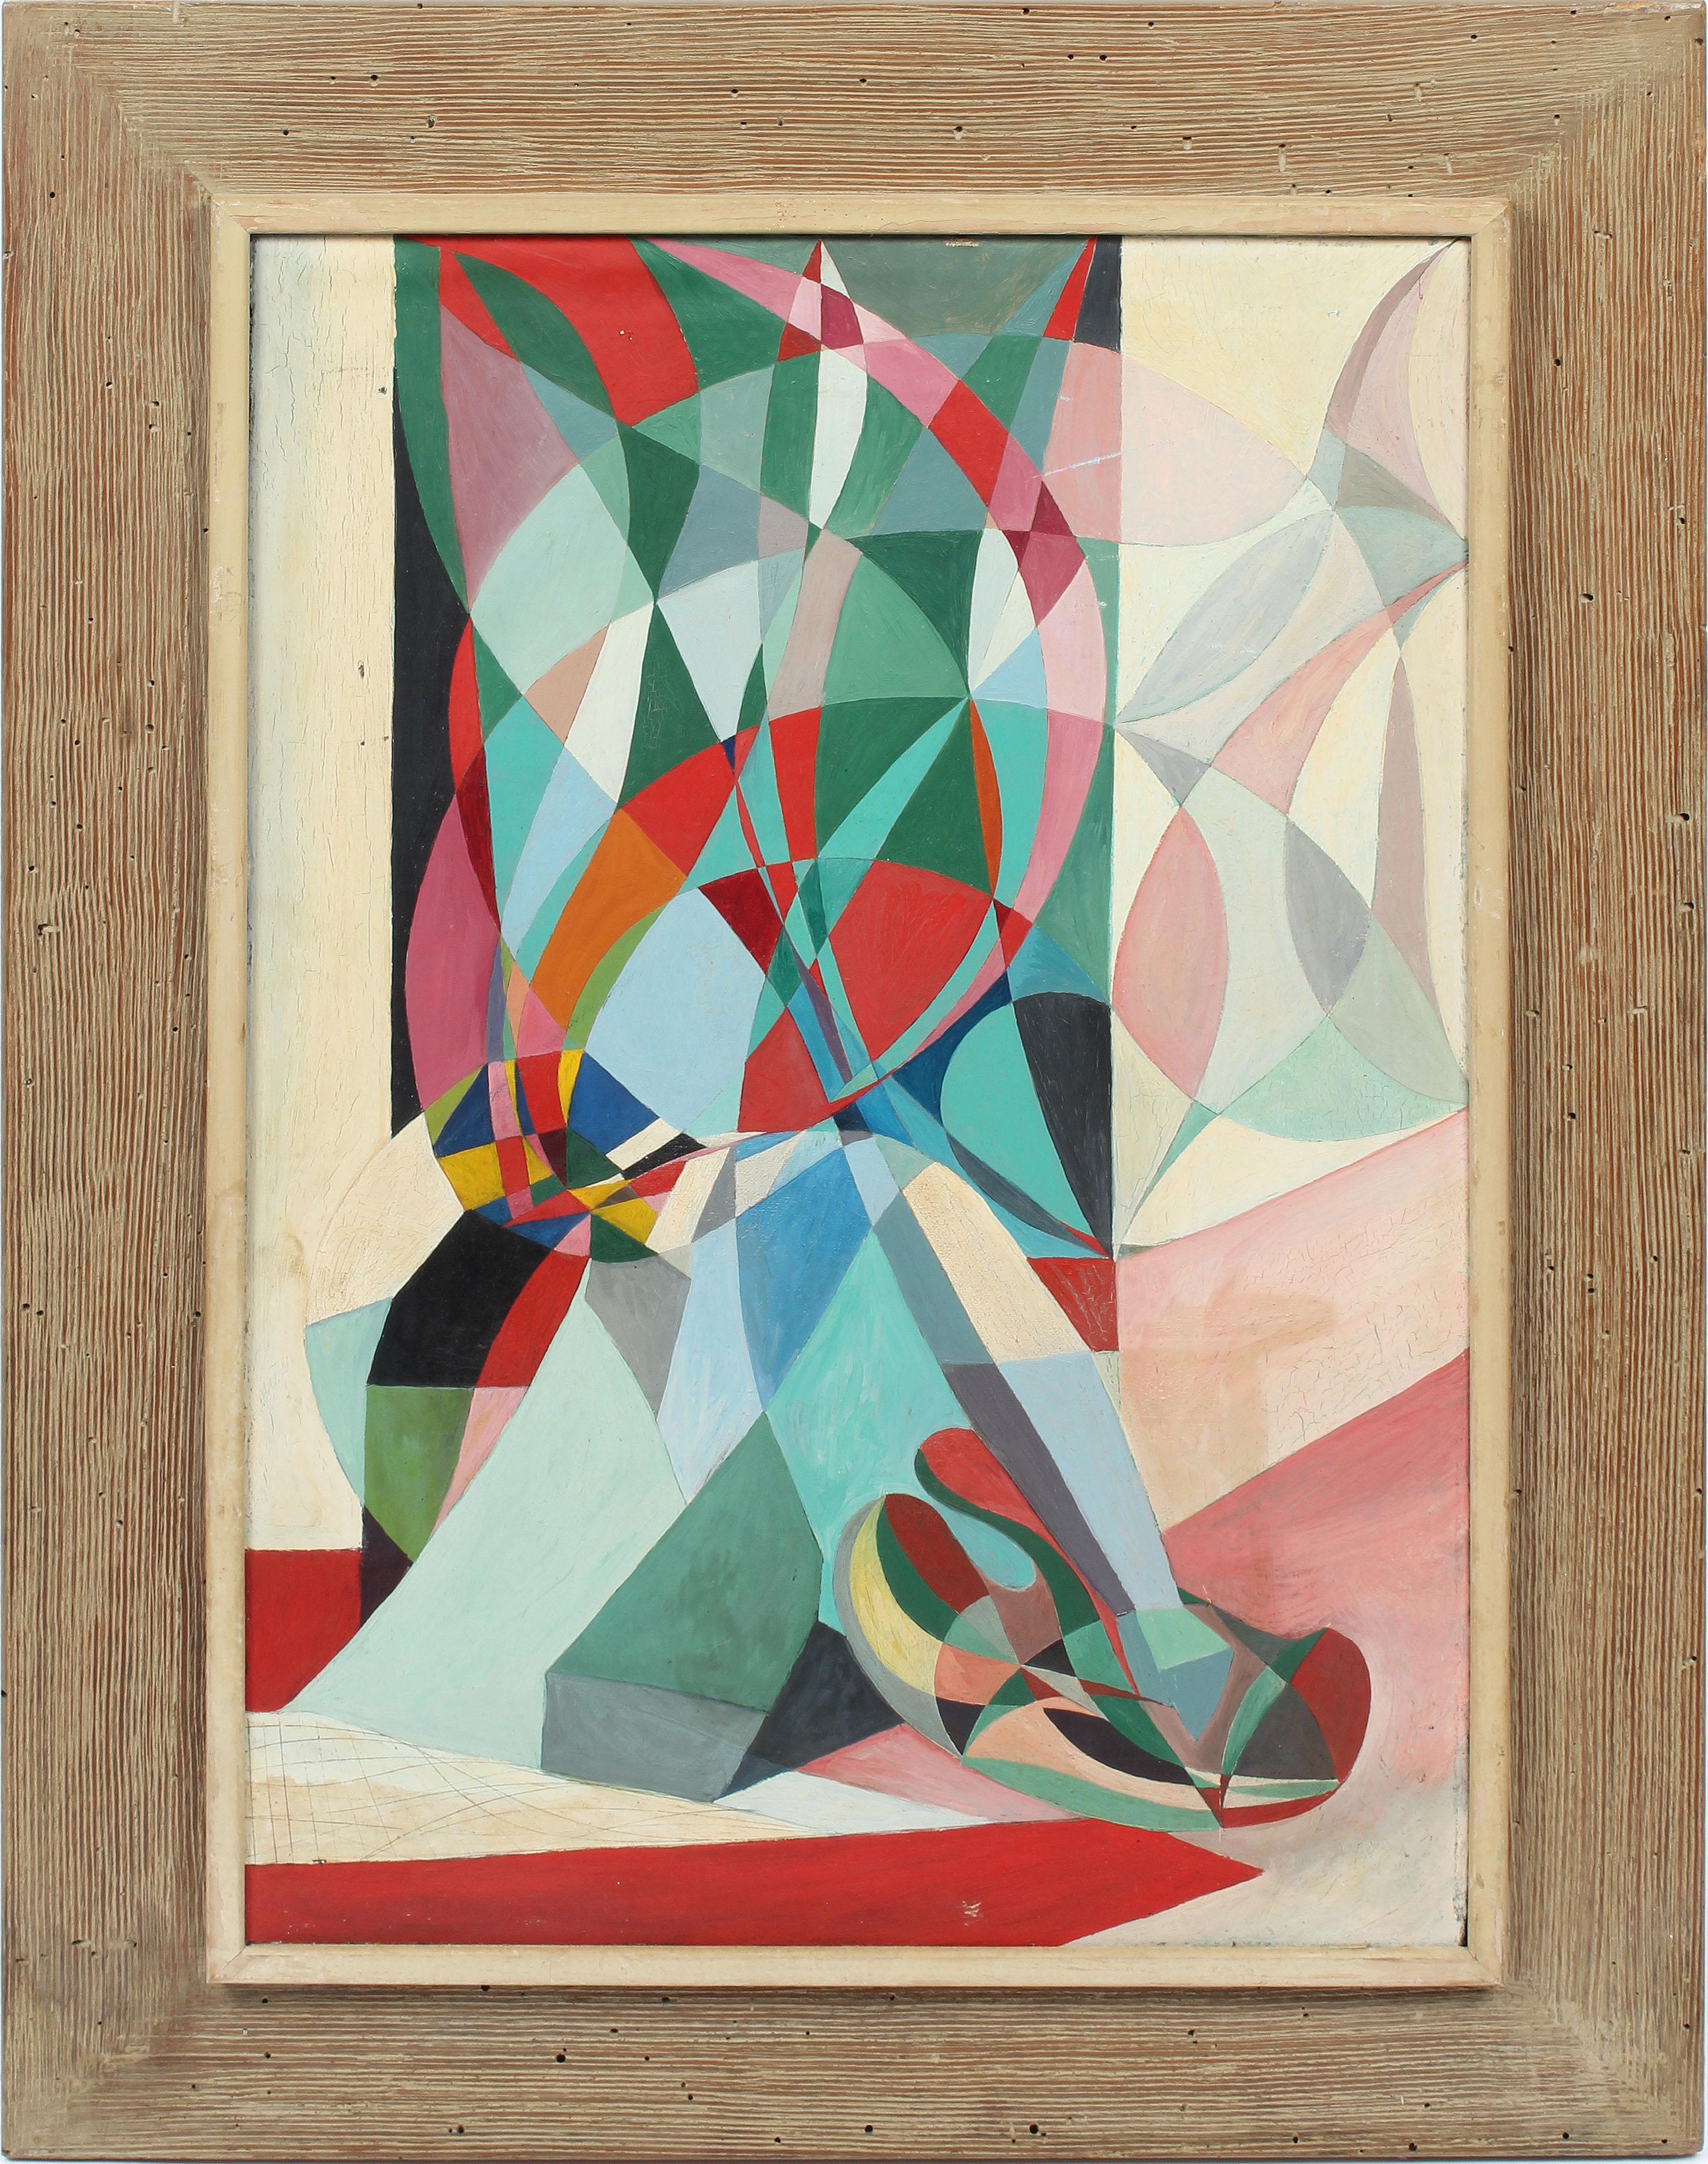 Ancienne peinture à l'huile abstraite cubiste américaine moderniste et abstraite signée, rare  - Painting de Lela Axline